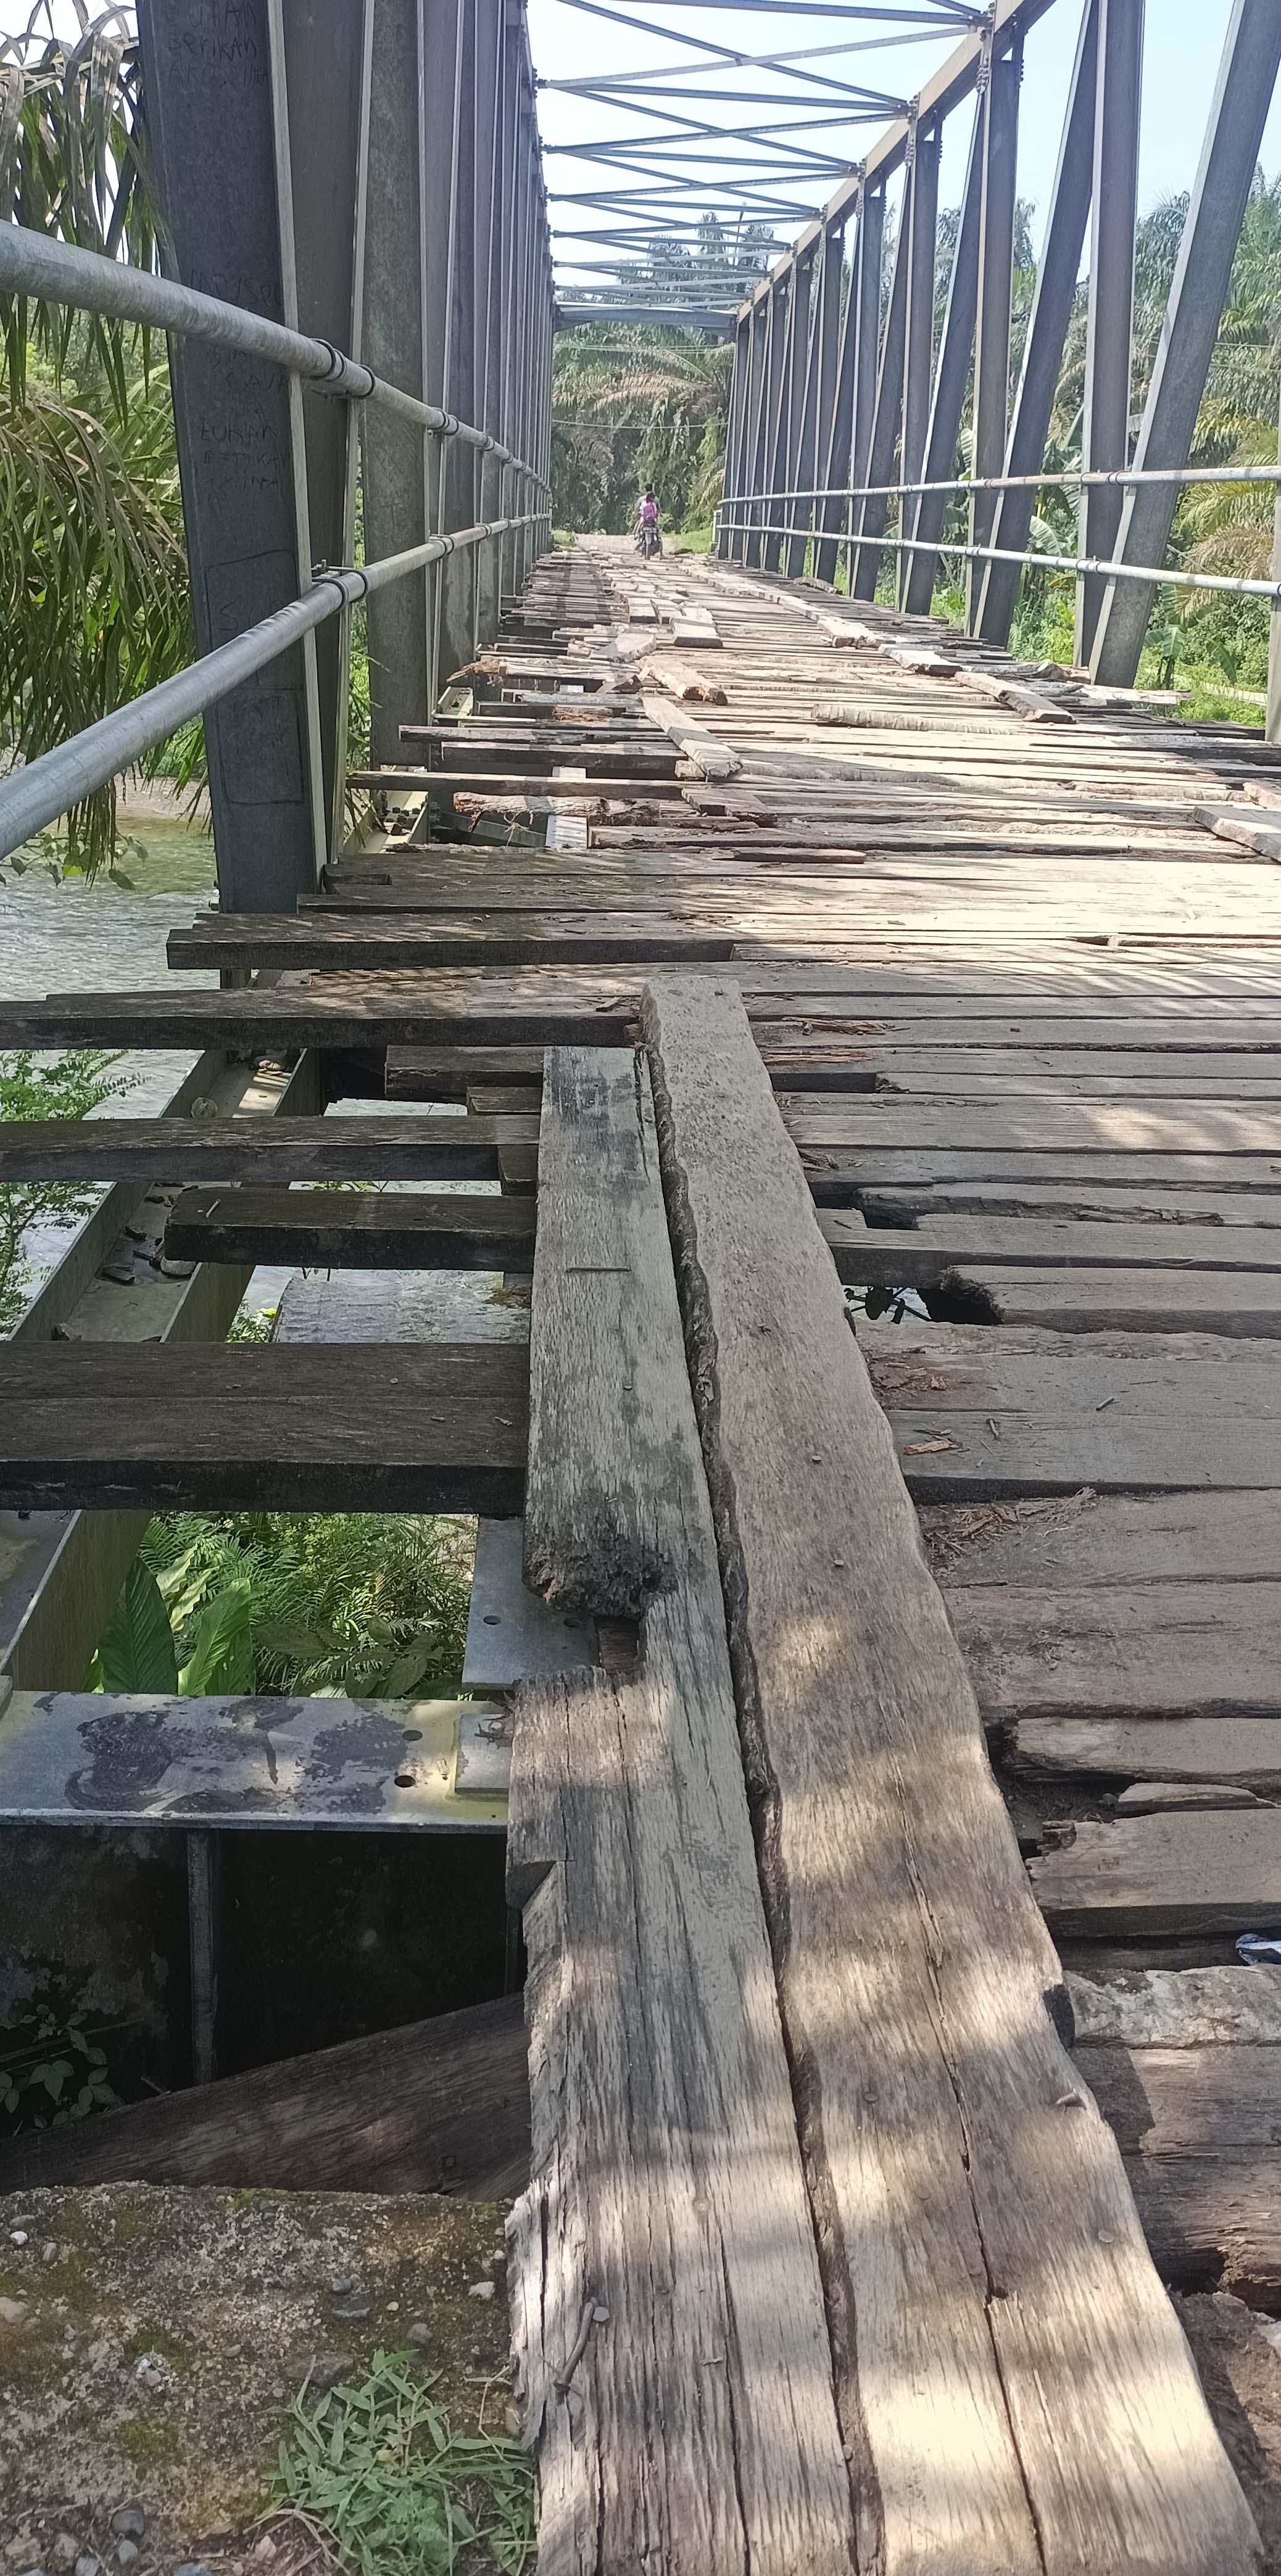  Lantai Jembatan Muara Nibung Seluma Ini Sudah Bahayakan Pengguna, Lantai Jembatan Sudah Hilang   